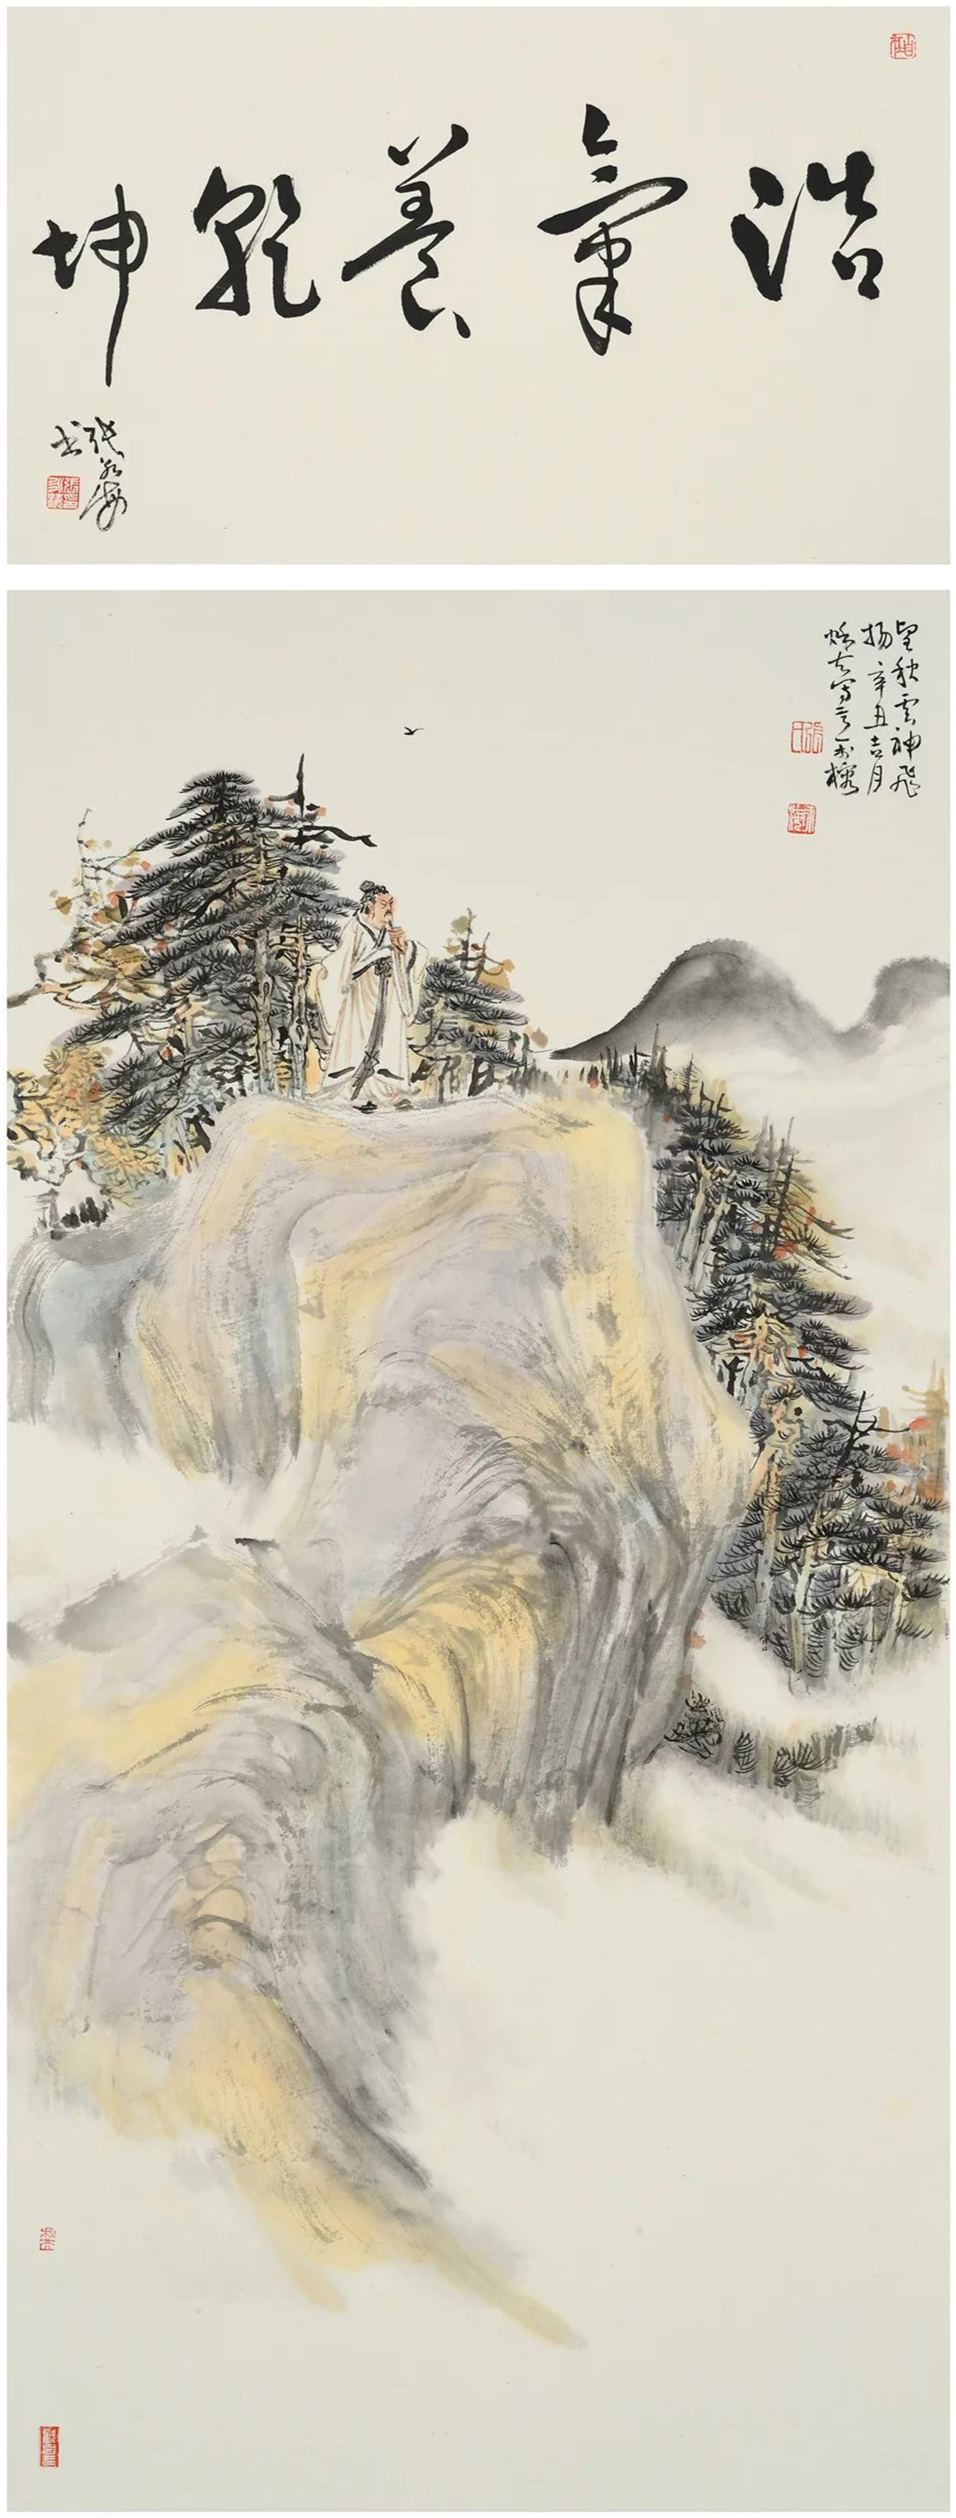 “墨象三味——中国画展（第10回）”将在厦门开展，著名画家张永海受邀参展